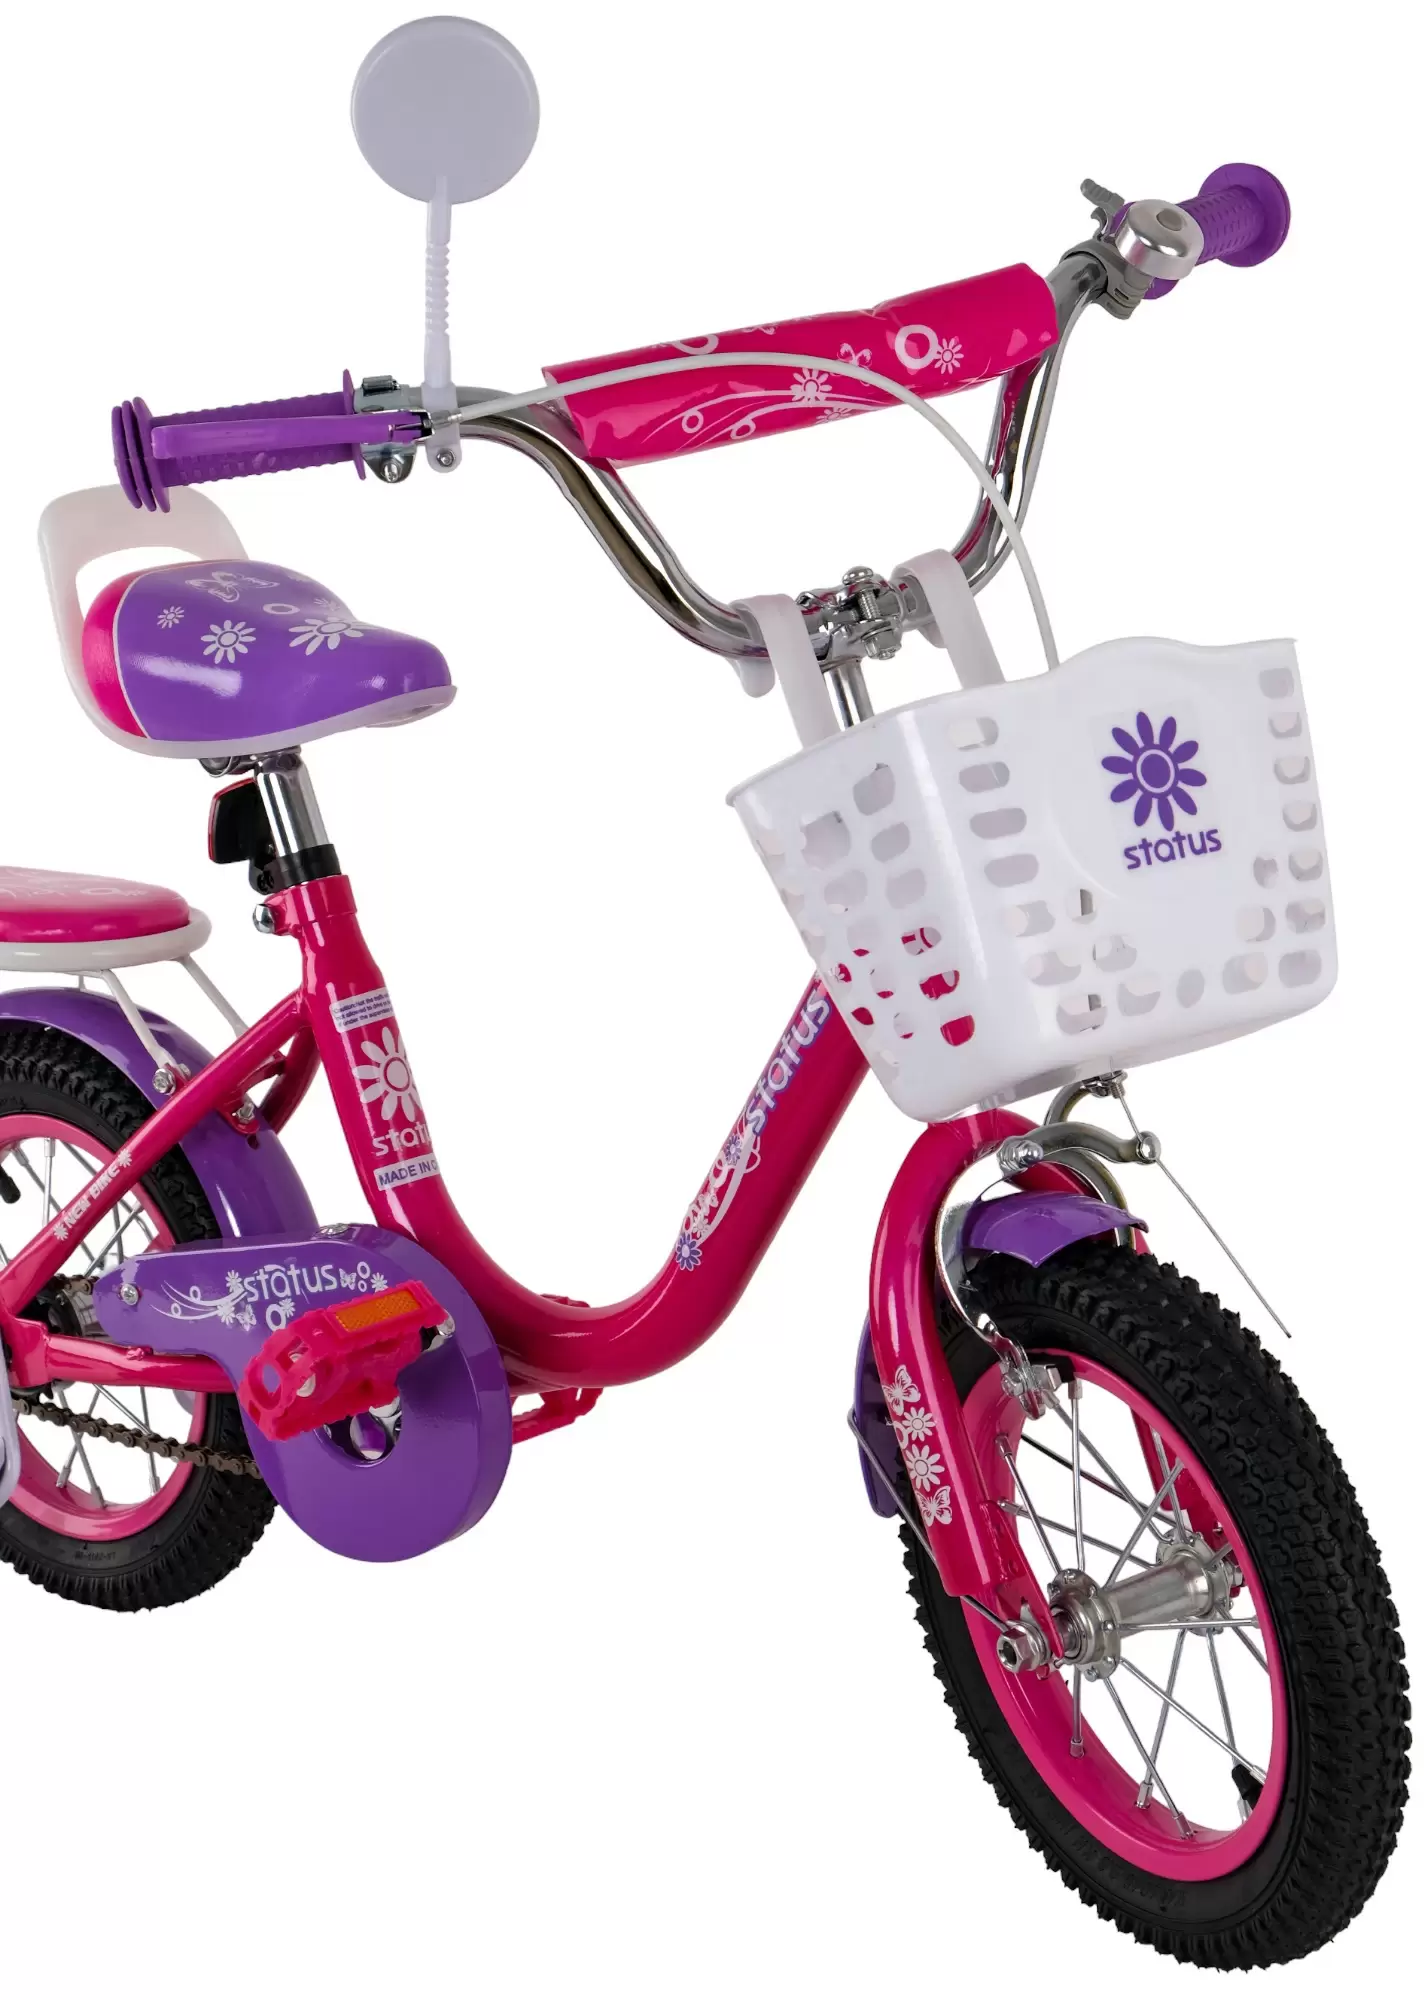 Велосипед Status 12 дюймов фиолетовый (3 - 4 года)